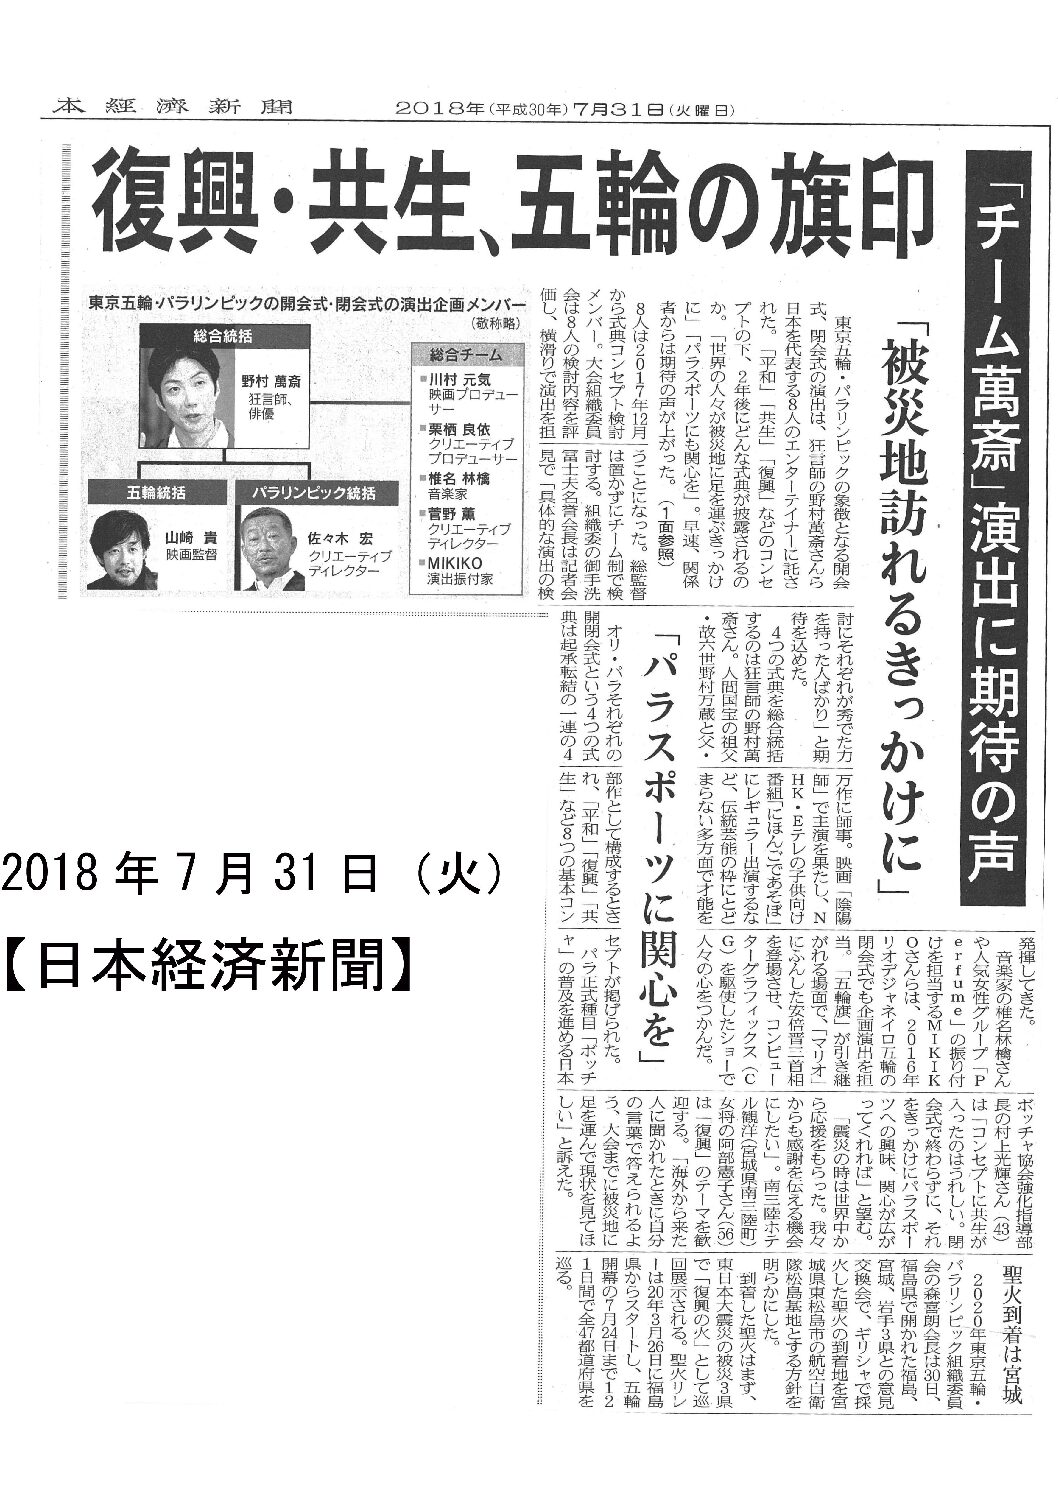 2018/07/31　【日本經濟新聞】　復興・共生、五輪の旗印